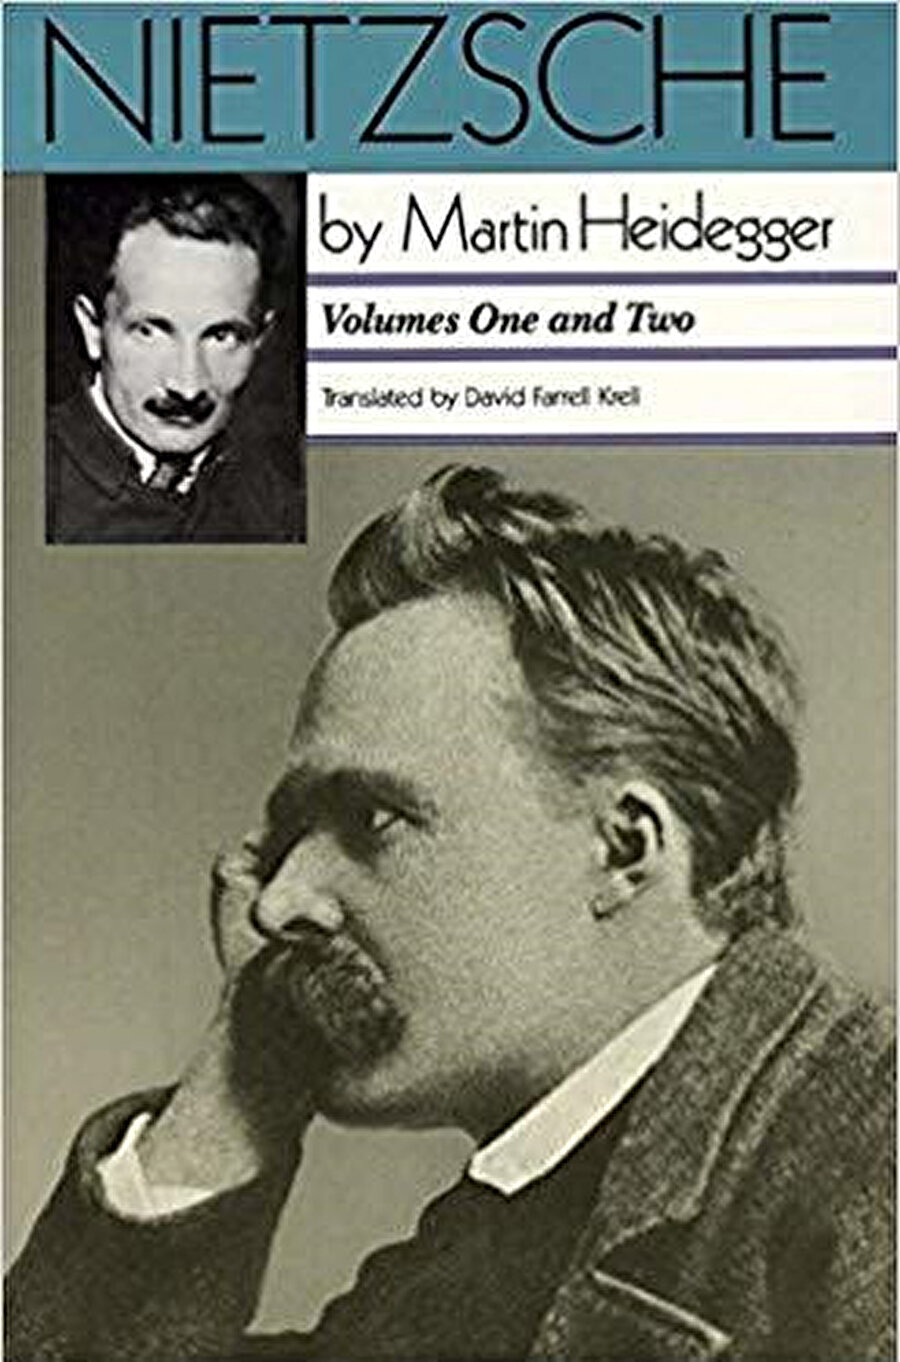 Martin Heidegger sadece yirminci yüzyılın değil belki de tüm zamanların en önemli filozoflarından kabul edilir. Onun 1936-1946 yılları arasında verdiği derslerden oluşan “Nietzsche” adlı önemli metni de başyapıtlarından birisidir. Heidegger, Nietzsche’yi Batı Felsefe Kanonu’nun “son metafizikçi”si olarak görür. Nietzsche, Heidegger için, metafizik geleneğinin son halkasıdır ama bu bir bakıma “metafizik gelenek olarak” felsefenin sınır durumunu da anlatan bir anlama sahiptir. Bu anlamıyla Heidegger’in okumasında Nietzsche’de çeşitli varyasyon ve modaliteler içinde ortaya çıkan gerilimler ilgili metafizik gelenekten kaynaklanır ve metin boyunca bu gerilimler farklı katmanlarda gösterilmeye çalışılır. Avrupa Nihilizmi’nin en “parlak” ve “kemal” bir şekilde dile geldiği Nietzsche’yi Heidegger, ilgili felsefi gelenekte bir kopuş olmaktan çok onun bir bakıma “devamı” olarak görür. Öte yandan Heidegger için son metafizikçi olarak Nietzsche, teknik bir felsefenin taşıyıcı olmadığı oranda hem beraber yürünmesi hem de sonrasında bırakılması gereken bir “yoldaş” olarak görülmektedir. 